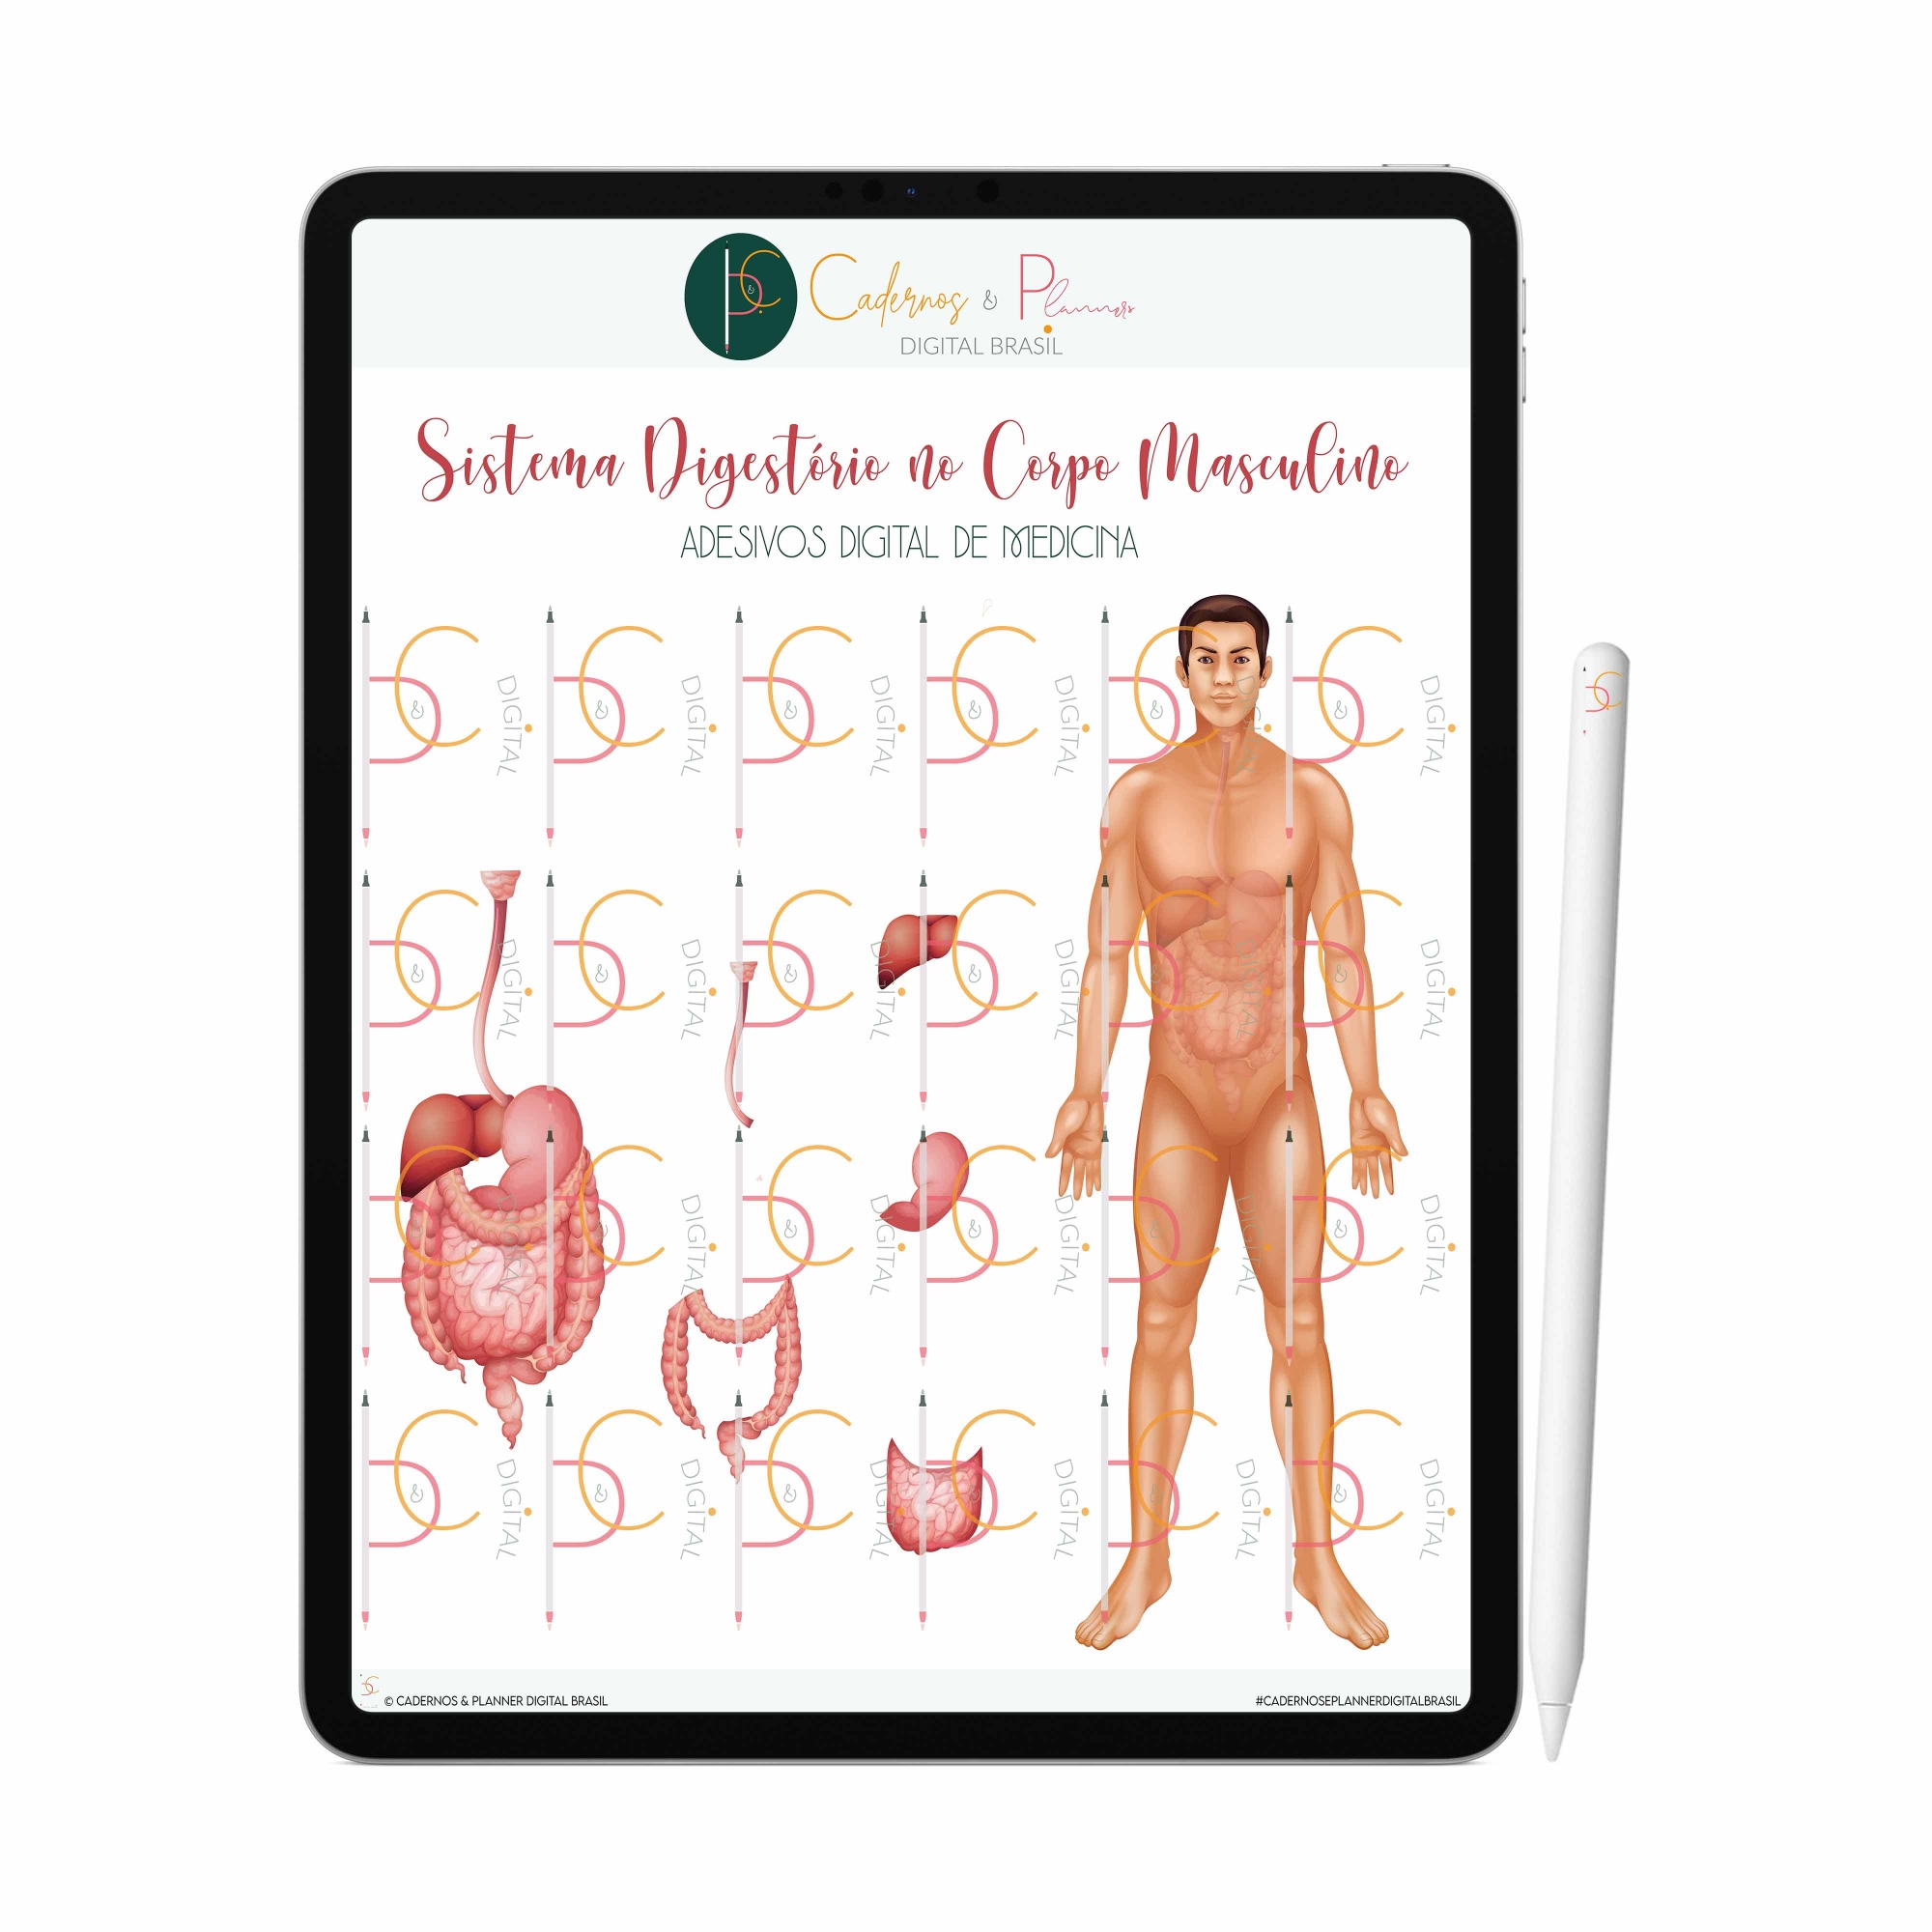 Adesivos Digital de Medicina - Sistema Digestório no Corpo Humano Masculino| iPad Tablet | Download Instantâneo